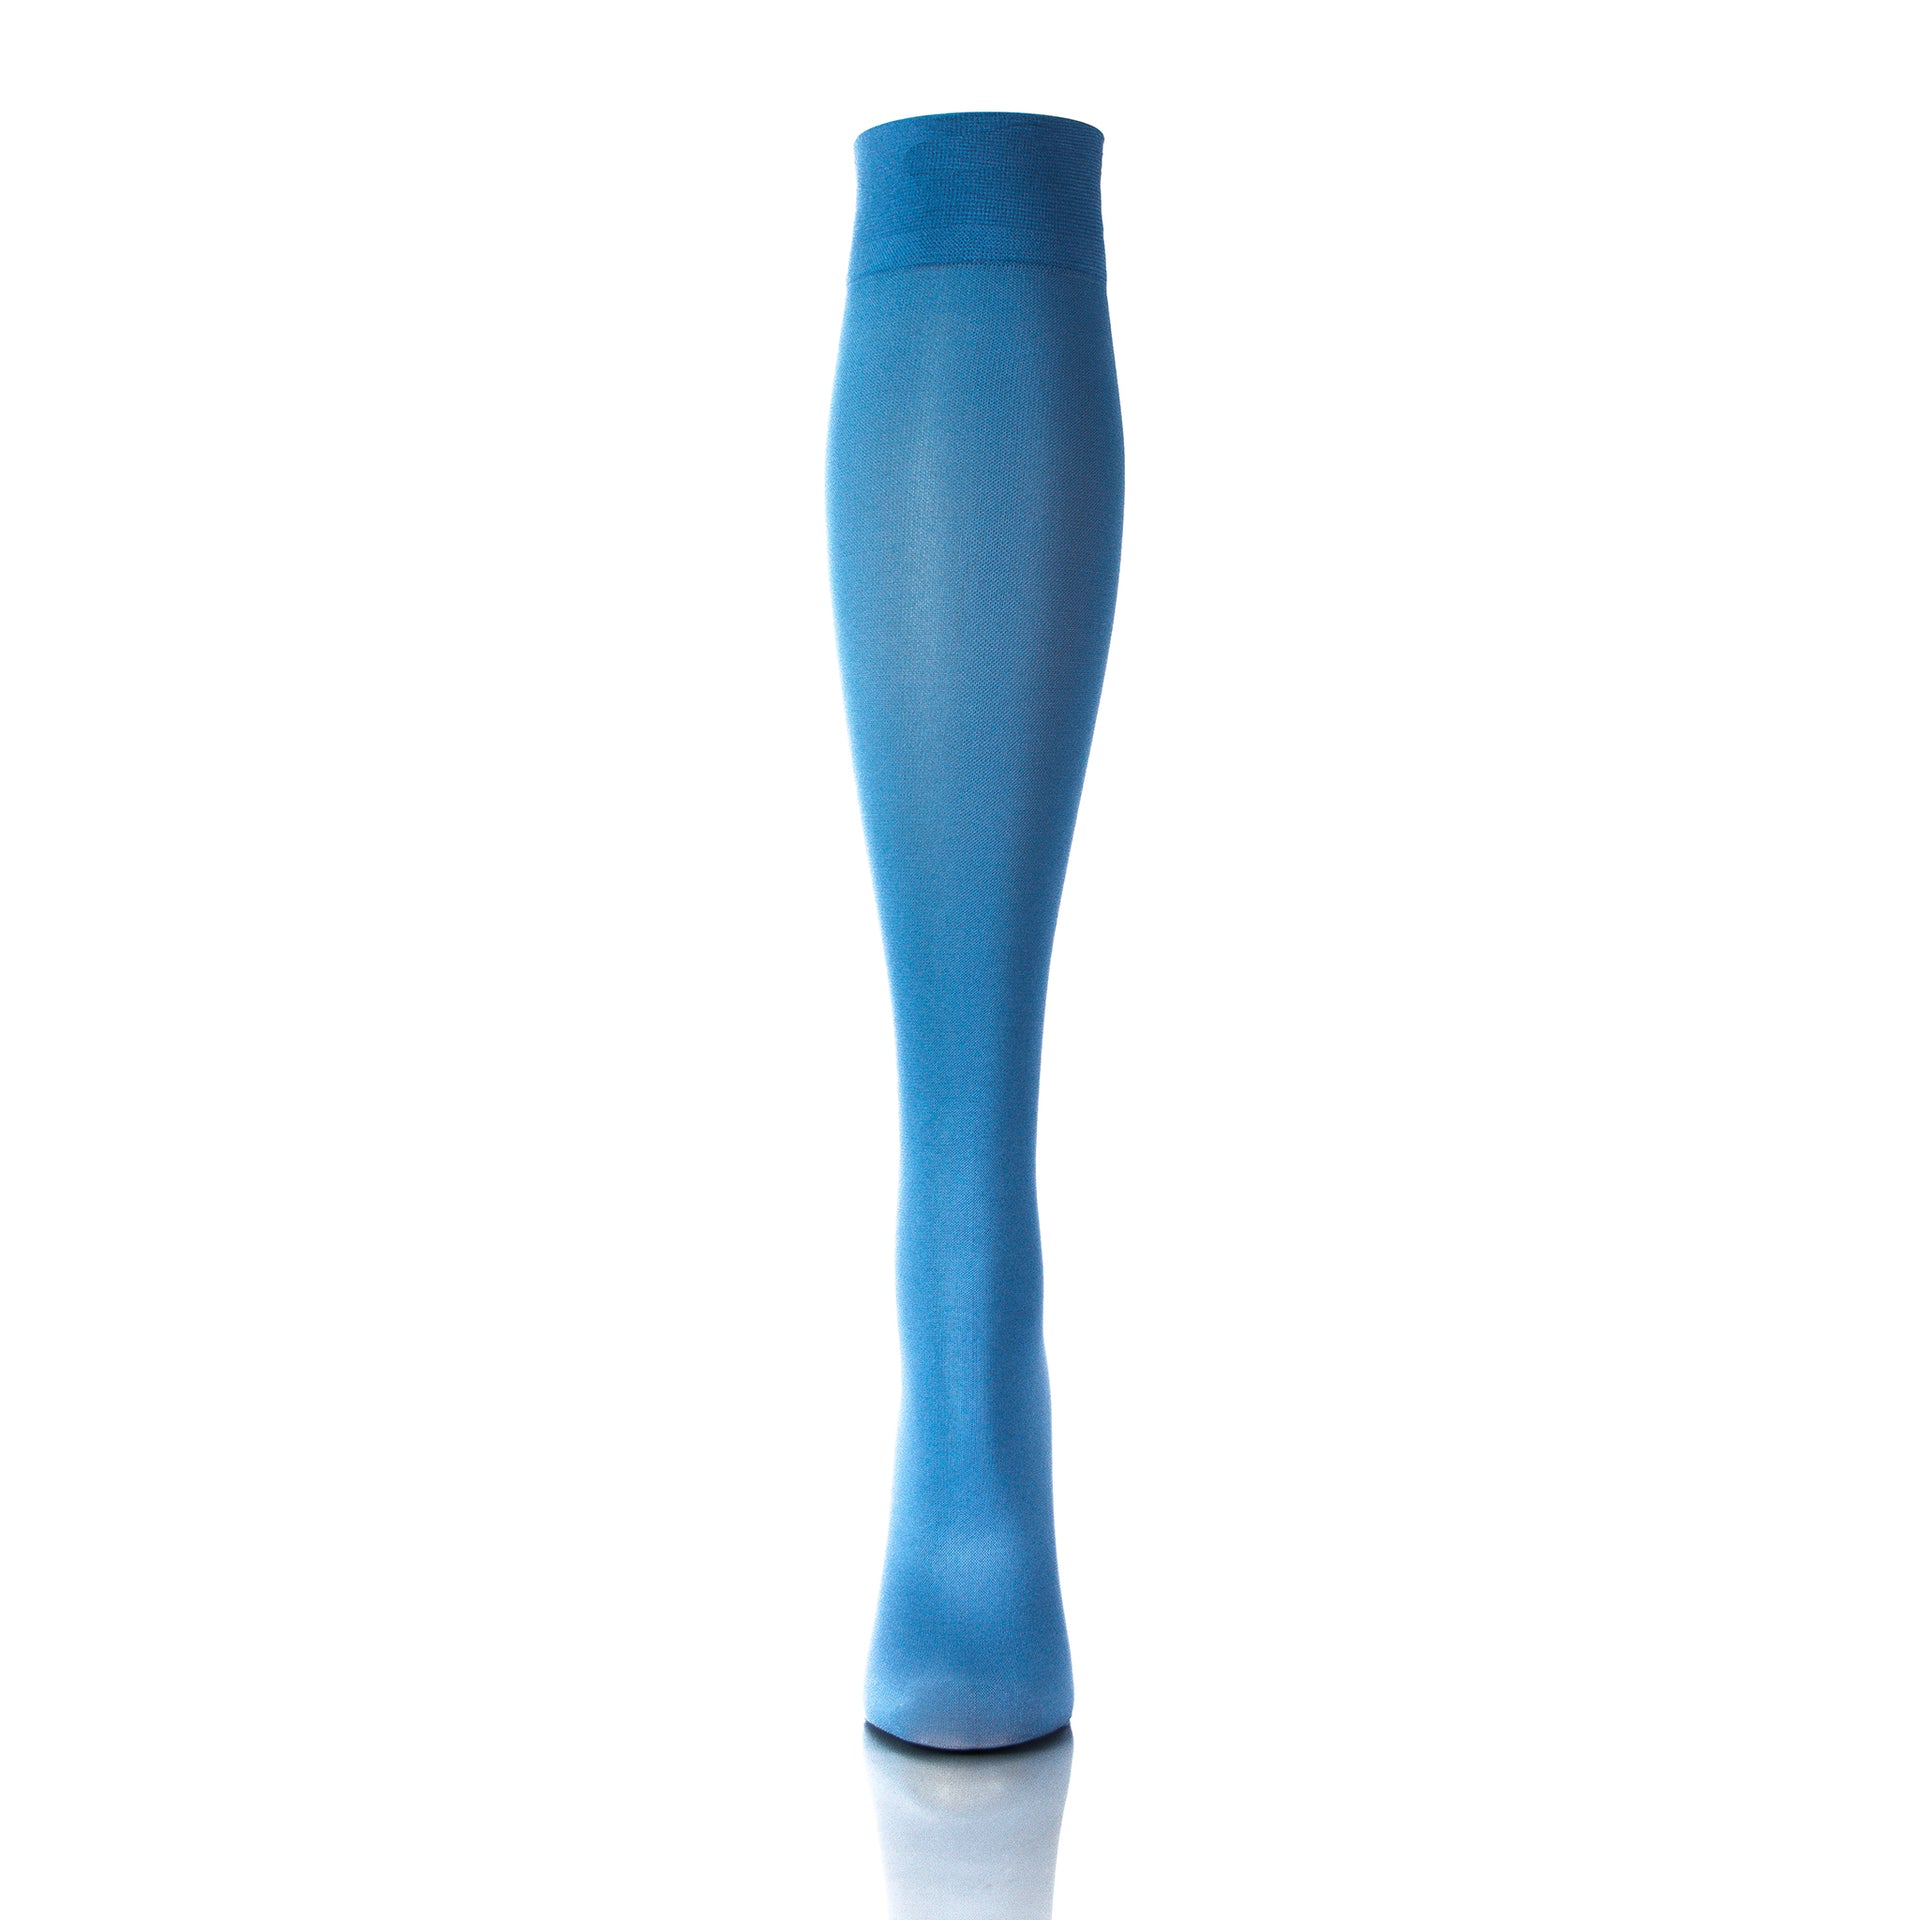 Bas support hauteur genou 20-30 mmHg en bleu ciel, vue de face, pour un soutien stylé - Softmedi